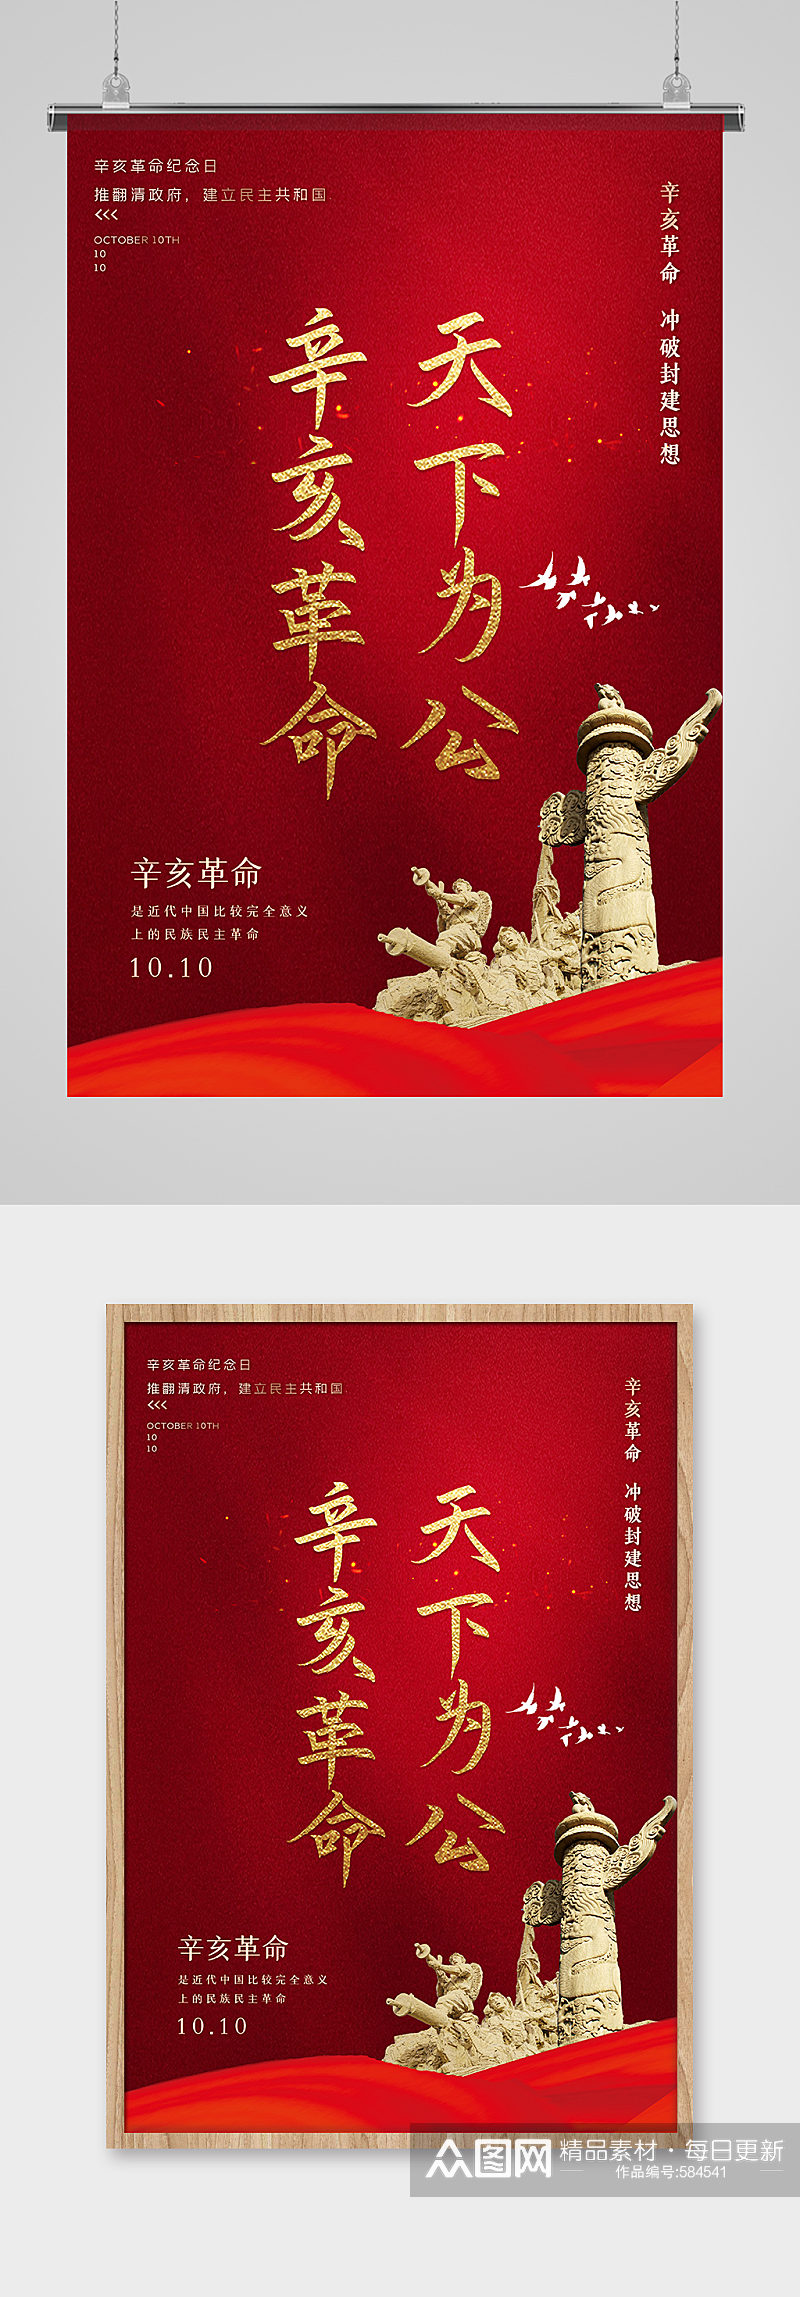 红色简洁辛亥革命纪念日主题海报素材